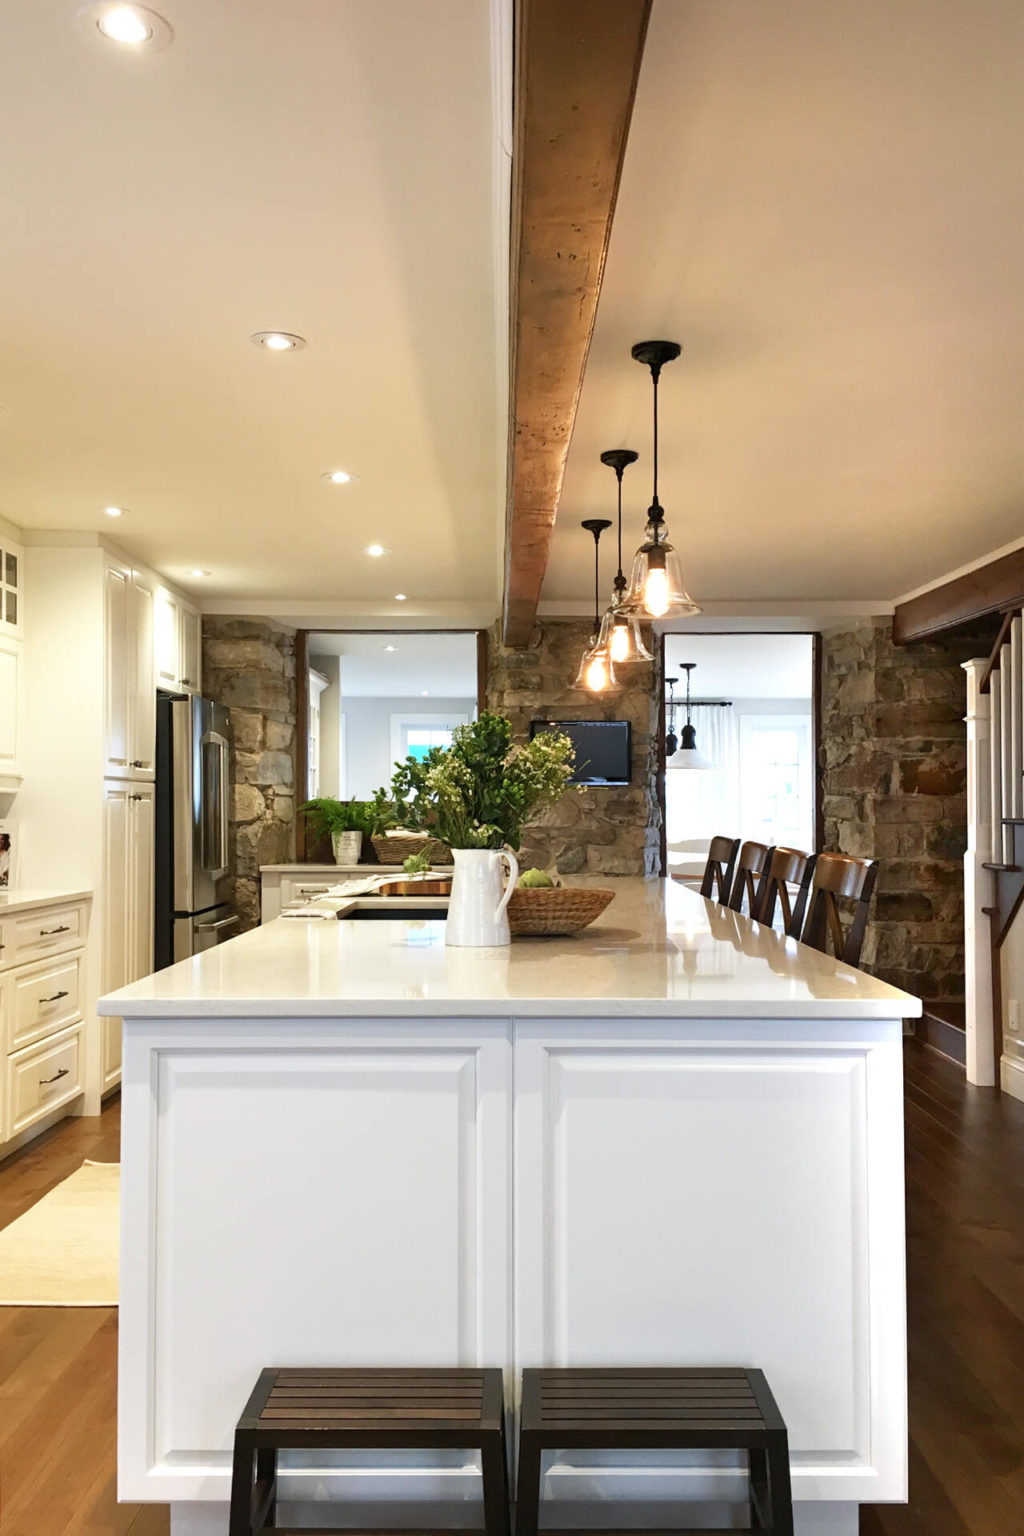 AKB Design cuisine blanche hotte pierre plancher bois comptoir quartz blanc poutre bois 6